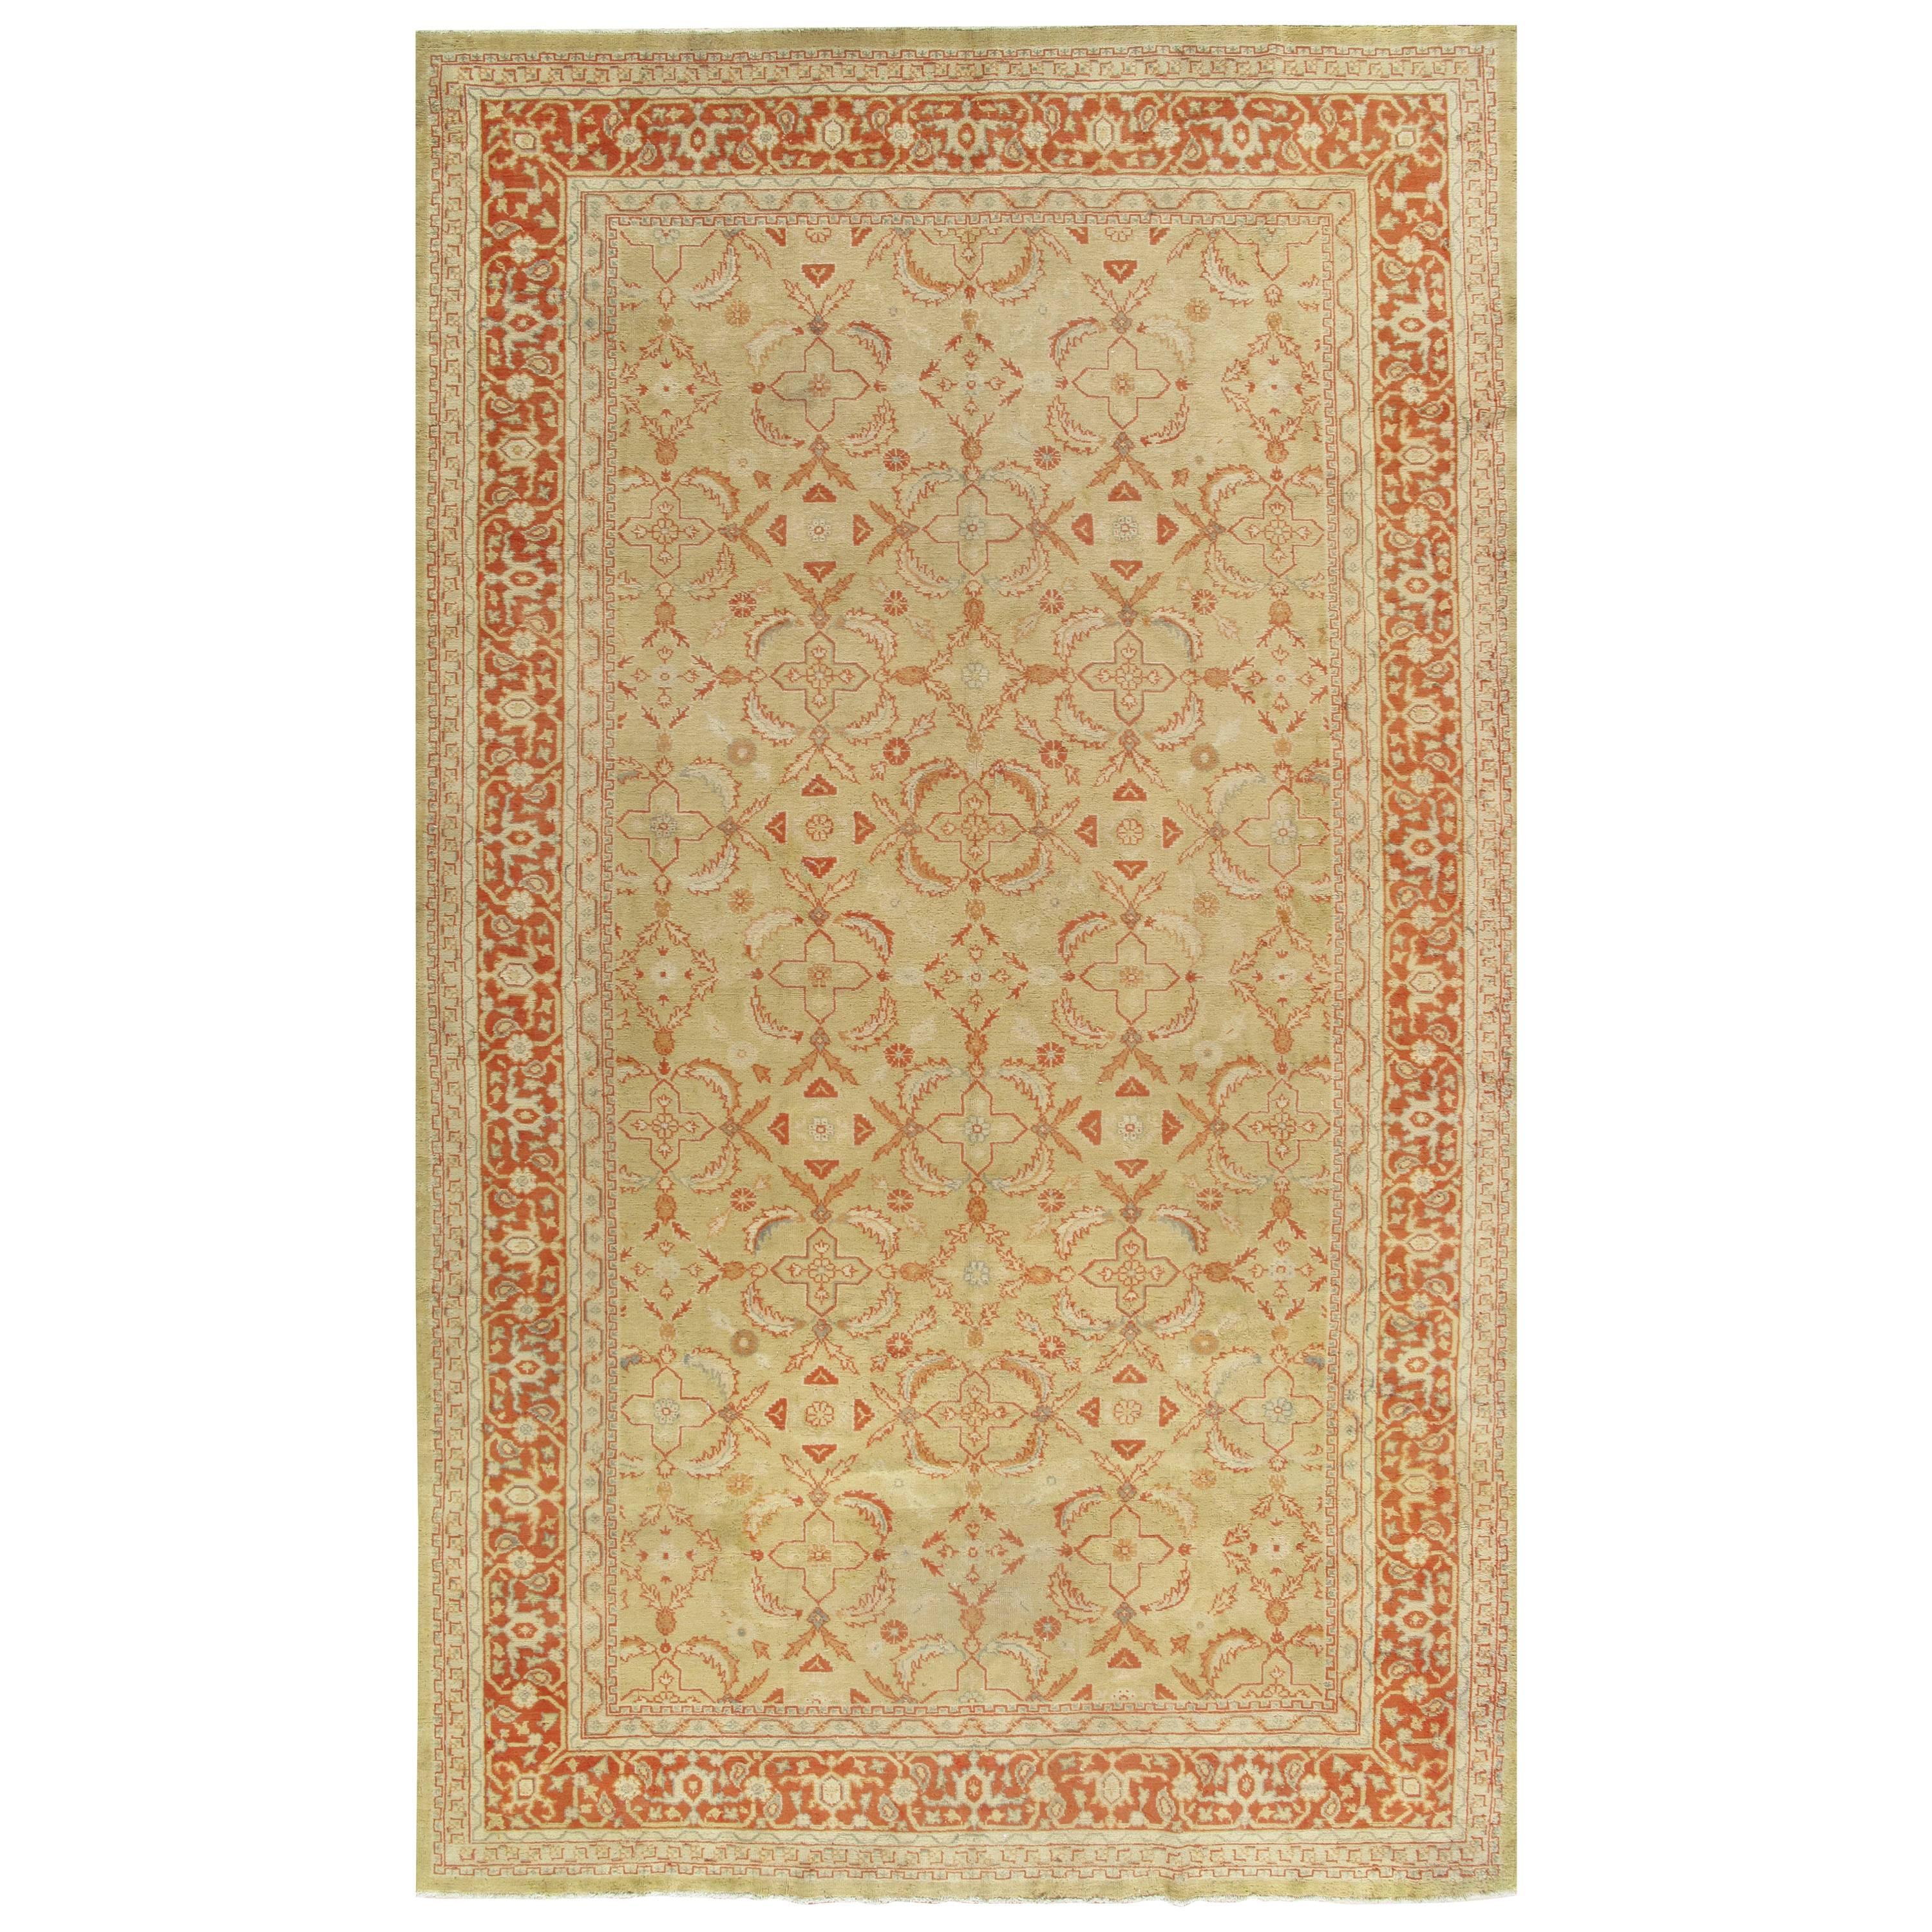 Antiker handgefertigter orientalischer Oushak-Teppich, blassgrüne Koralle, Taupe, cremefarbener feiner Teppich